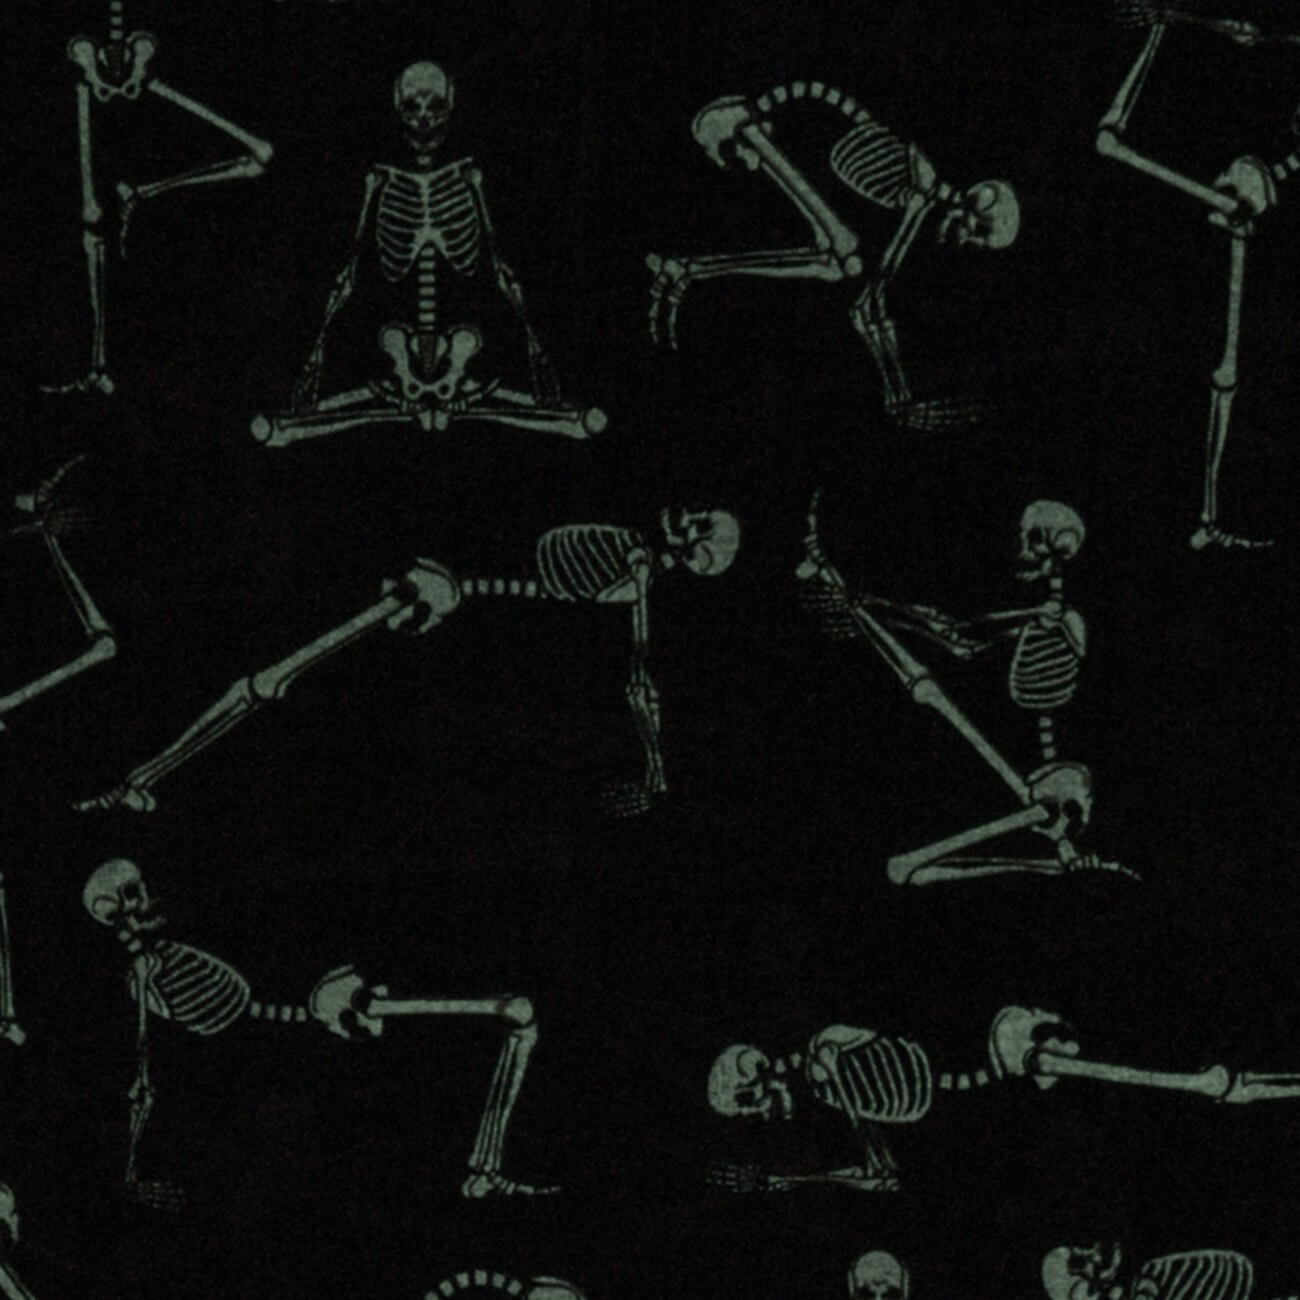 Quiltzauberei.de | Schwarzer Yogastoff mit Skeletten - GLOW IN THE DARK  Lights Out Skeletons Motivstoff - Robert Kaufmann Halloweenstoffserie |  Quiltzauberei.de ♥ Jetzt günstig kaufen!